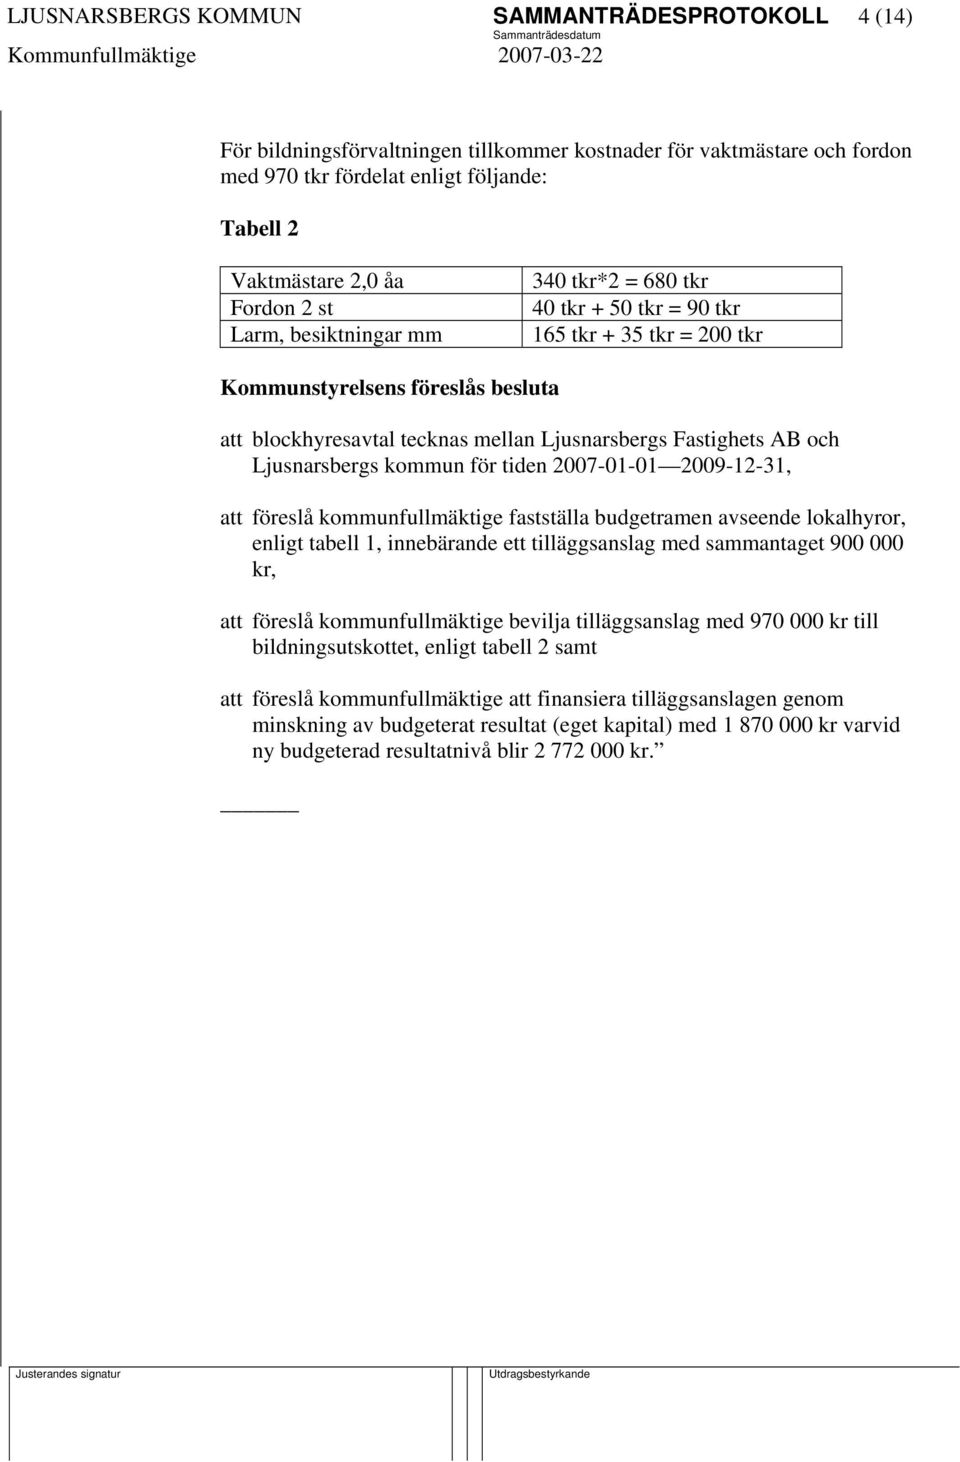 Ljusnarsbergs kommun för tiden 2007-01-01 2009-12-31, att föreslå kommunfullmäktige fastställa budgetramen avseende lokalhyror, enligt tabell 1, innebärande ett tilläggsanslag med sammantaget 900 000